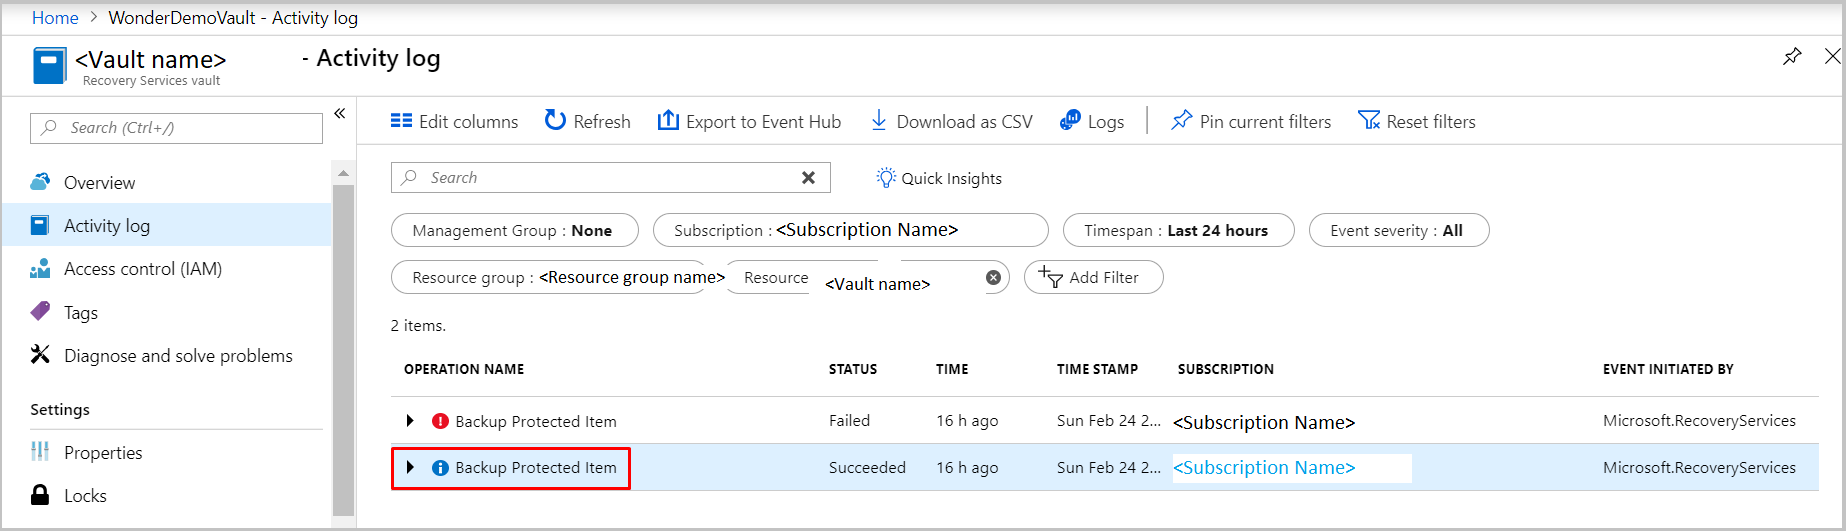 Filtering to find activity logs for Azure VM backups